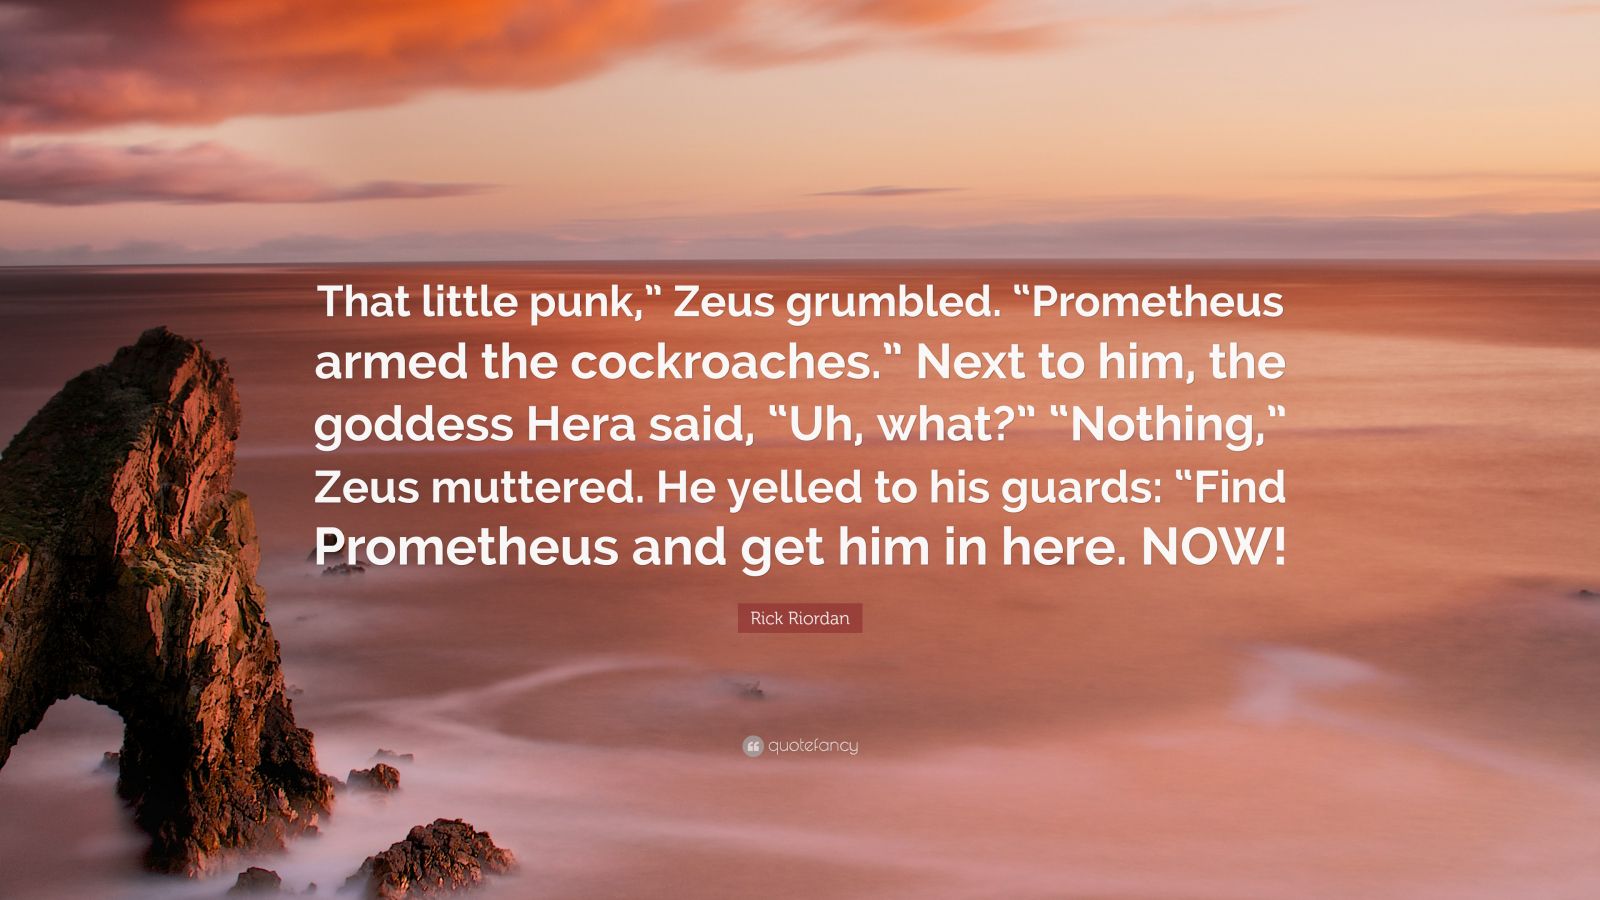 Rick Riordan Quote: “That little punk,” Zeus grumbled. “Prometheus